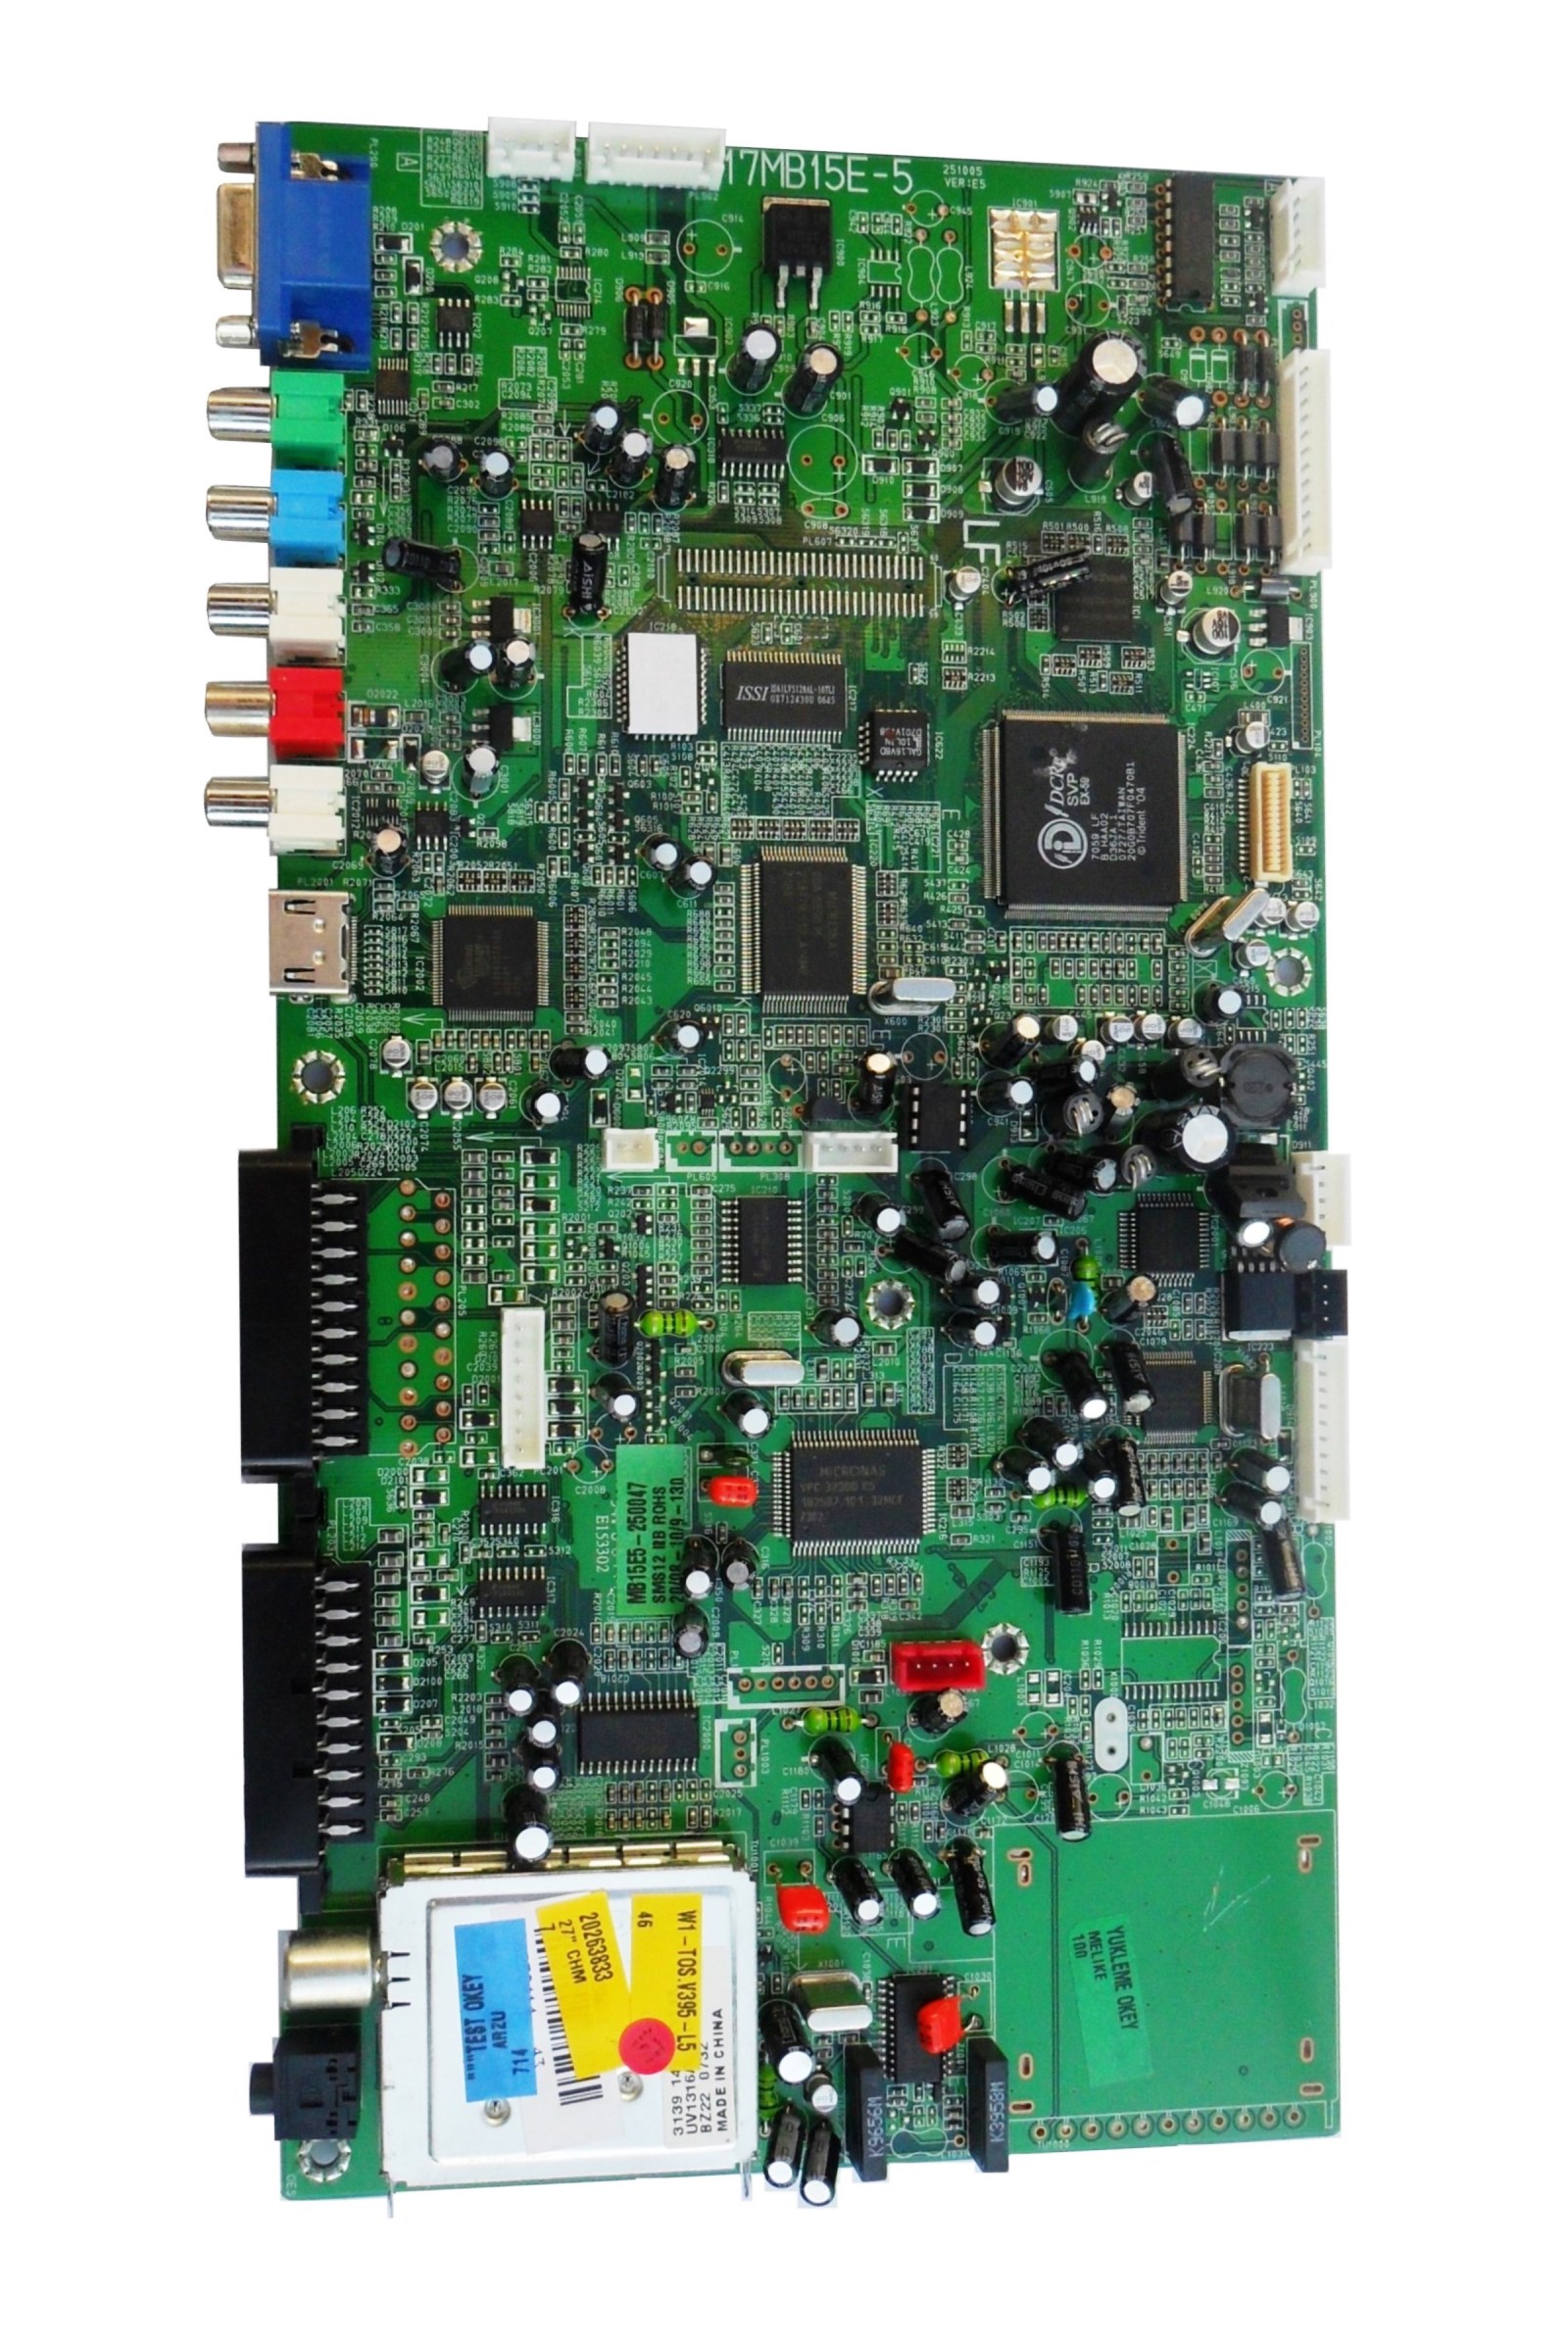 PL BAZA LCD TOSHIBA V20263833B1 17MB15E-5